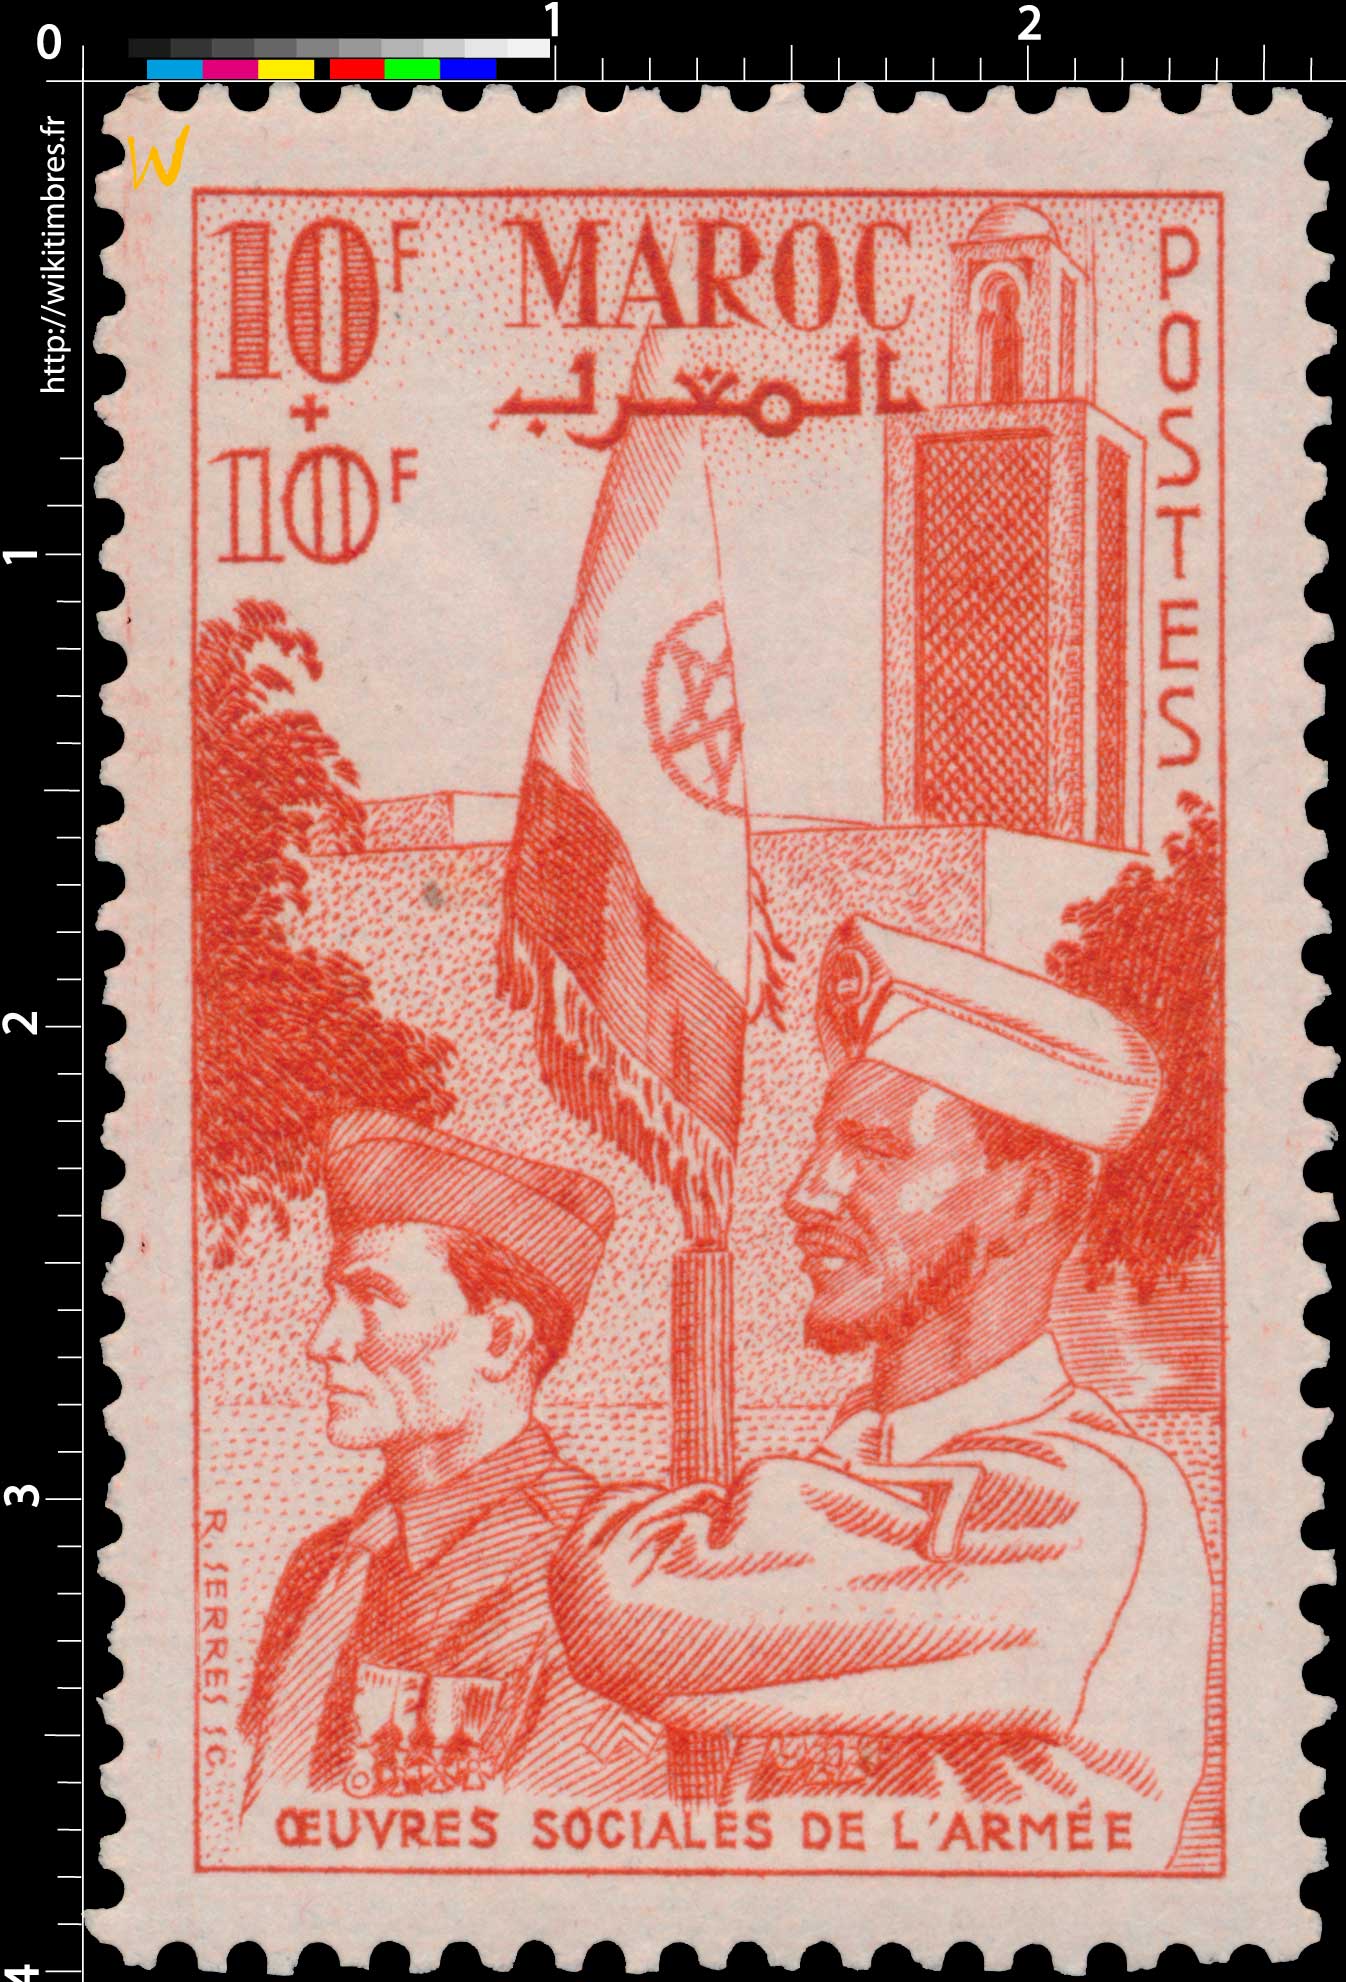 1949   Maroc - Au profit des Oeuvres sociales de l'Armée